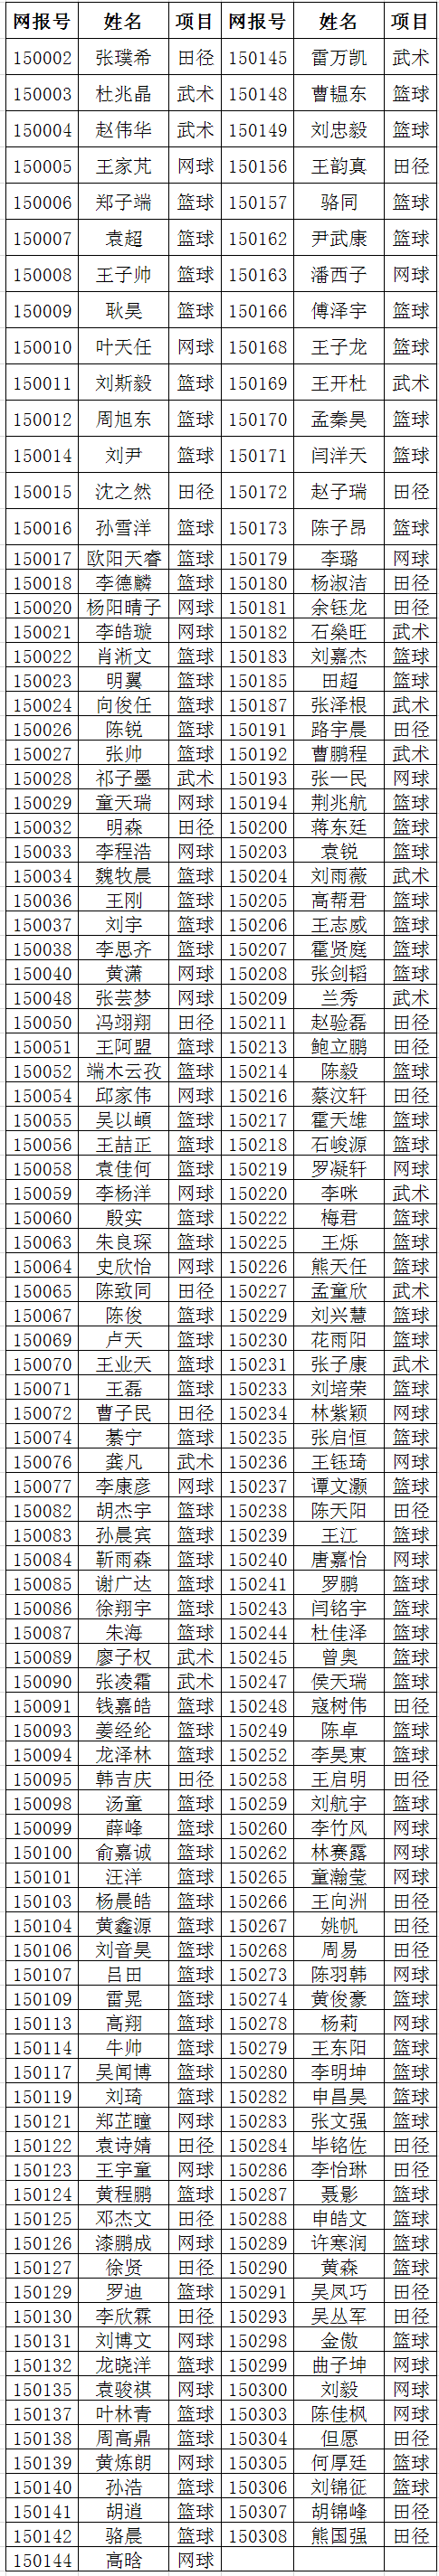 武汉理工大学2015年高水平运动队招生初审合格名单